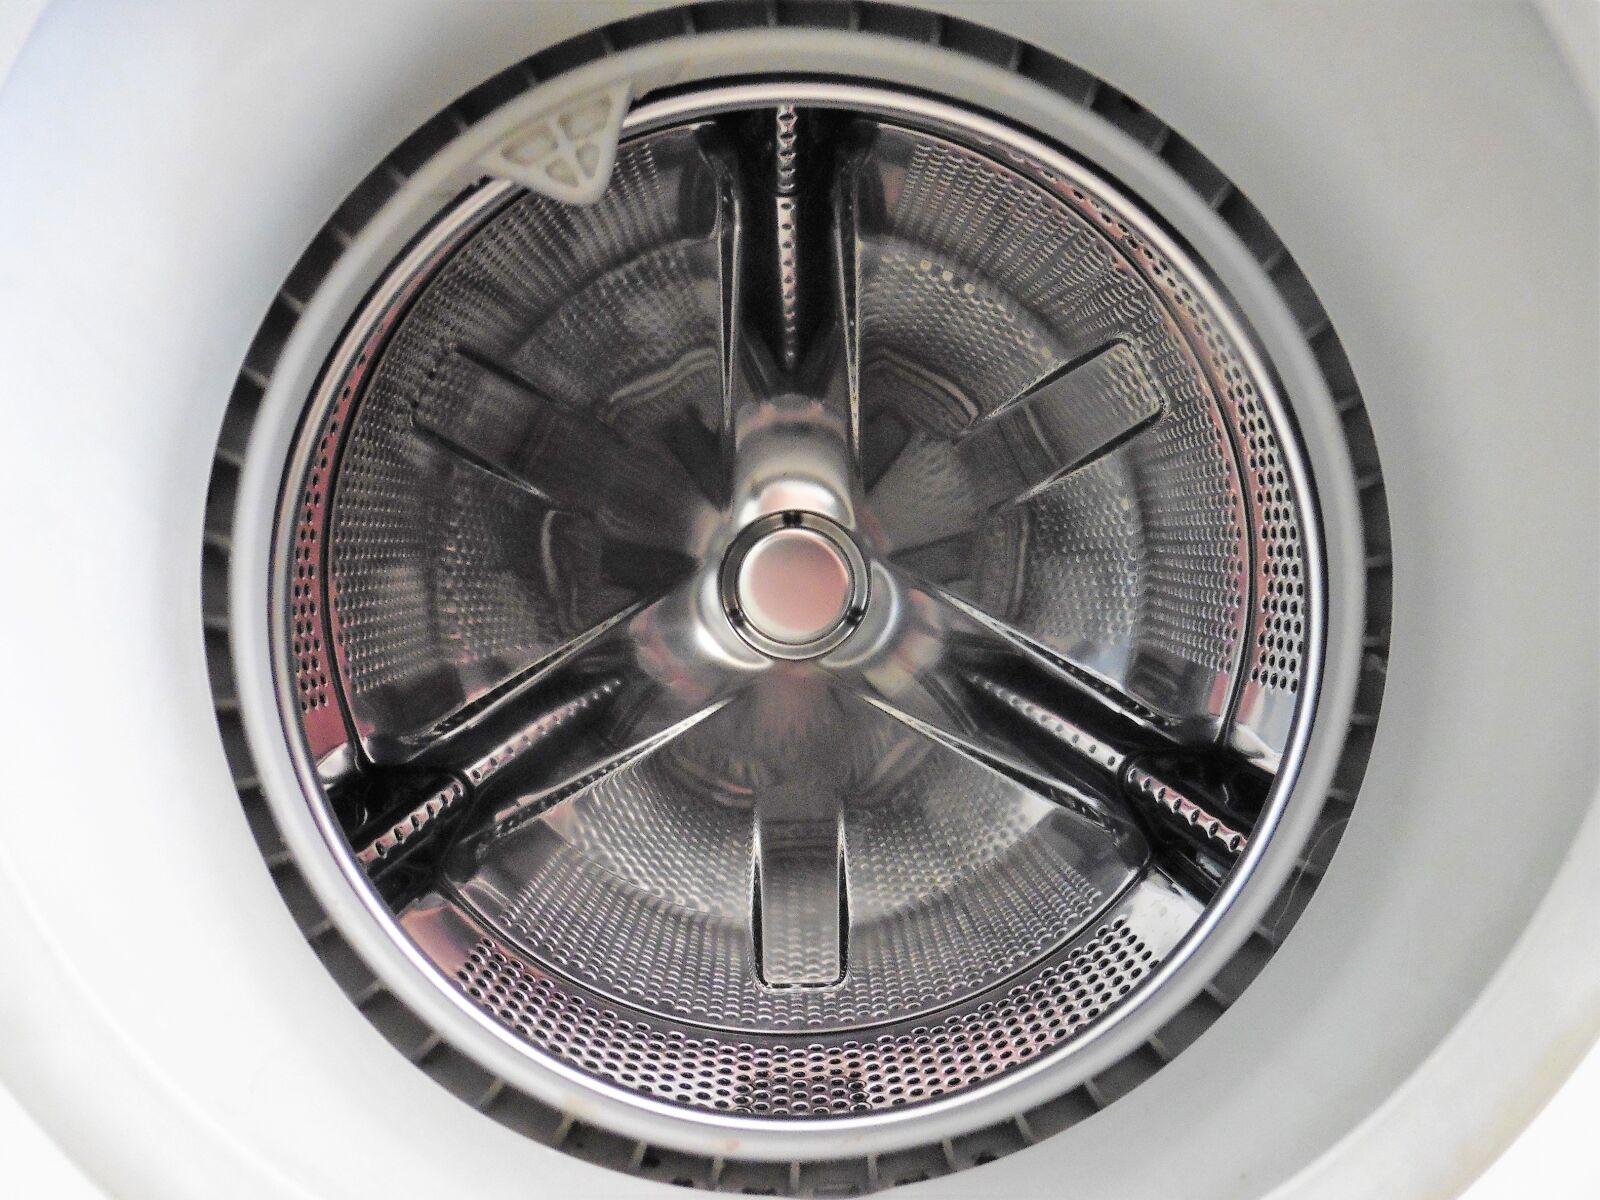 Panasonic DMC-TZ55 sample photo. Washing machine drum, mechanism photography